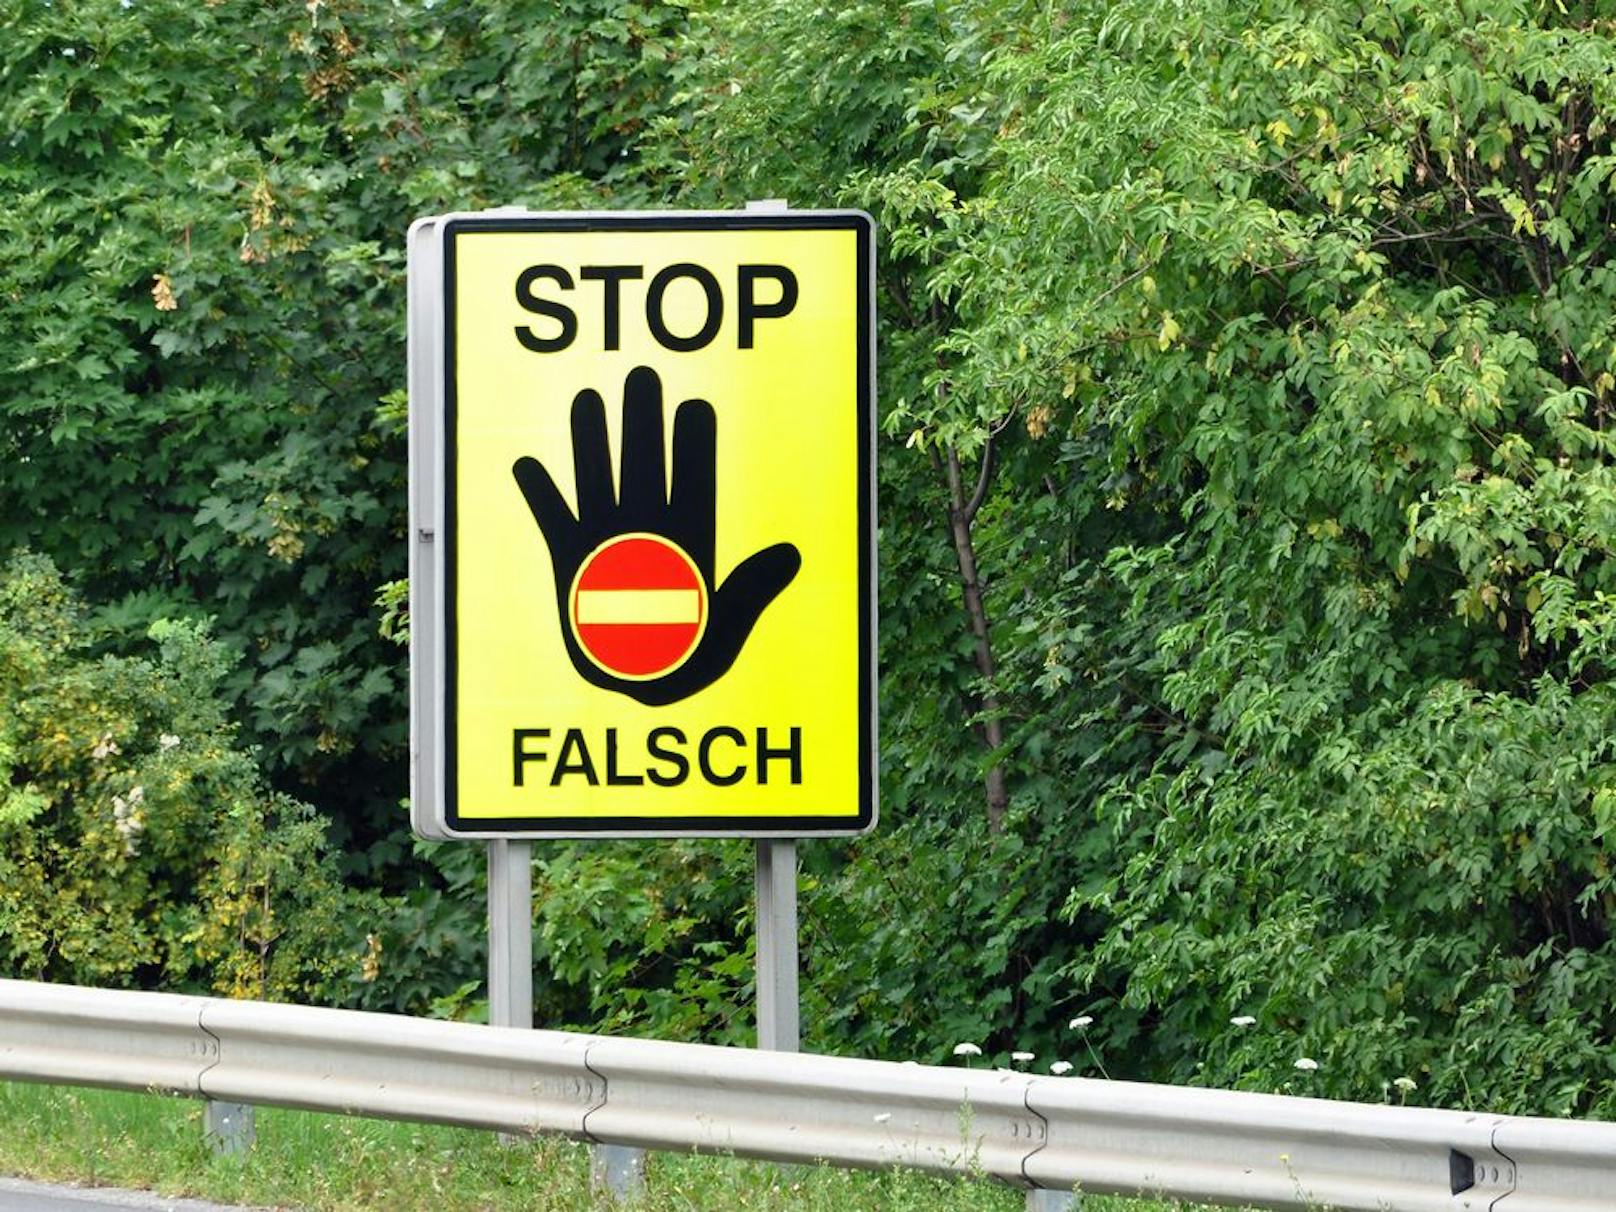 Geisterfahrer rammt Straßensperre! - Niederösterreich | heute.at